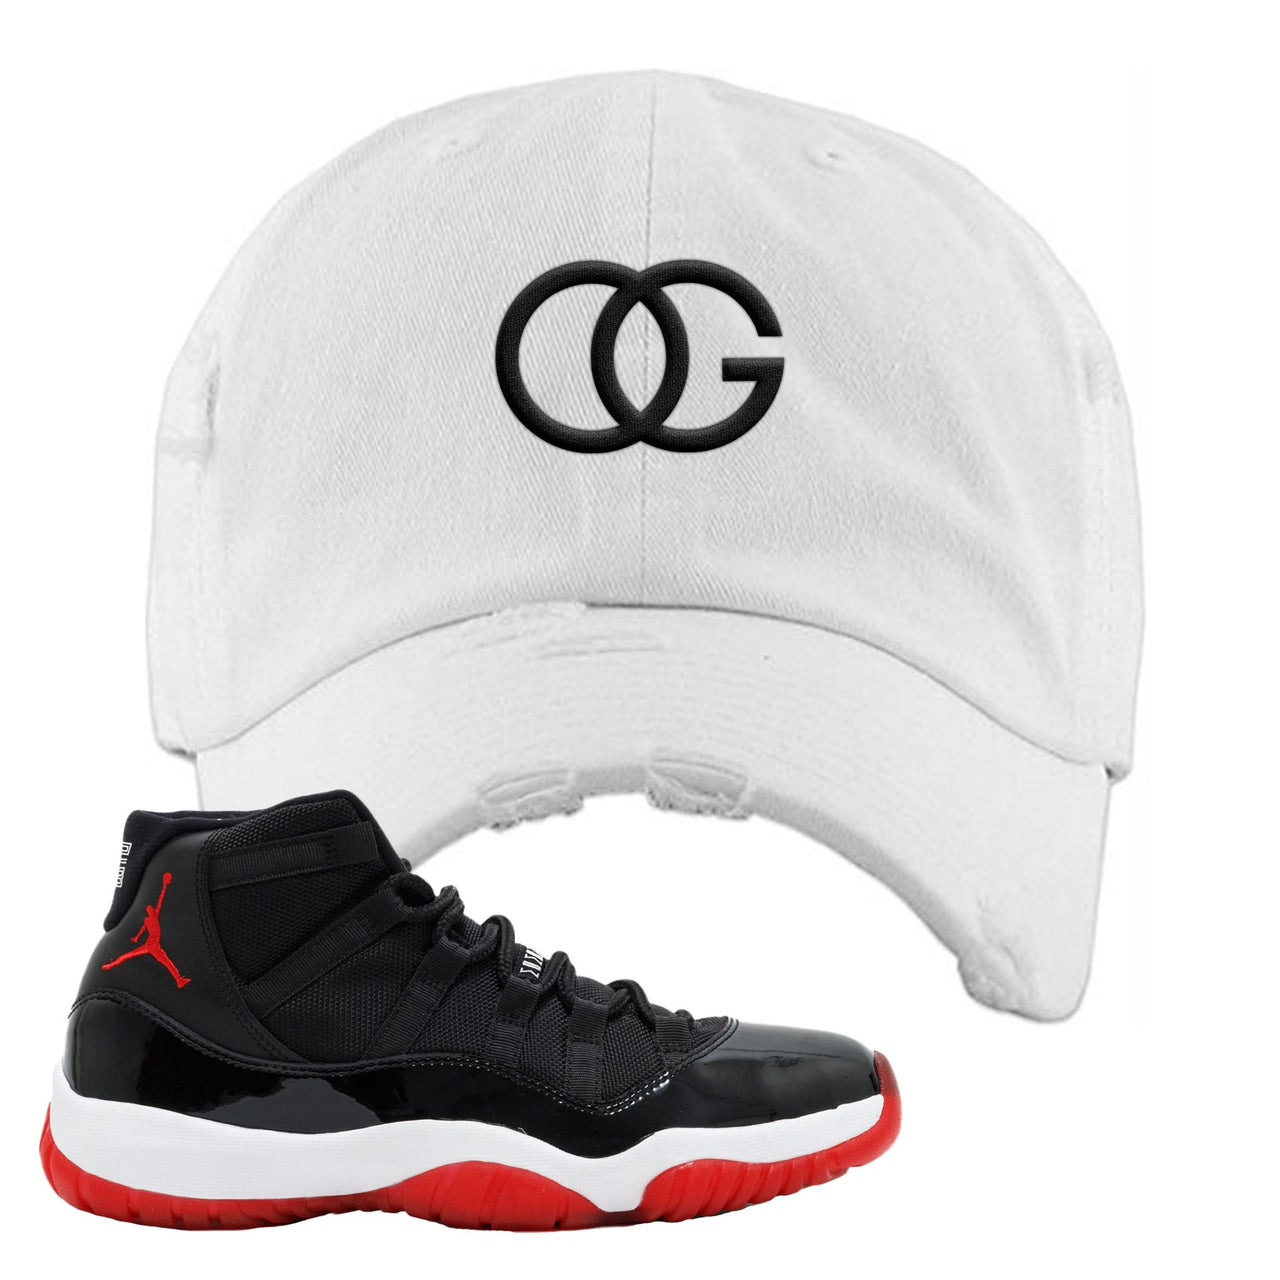 Jordan 11 Bred OG White Sneaker Hook Up Distressed Dad Hat